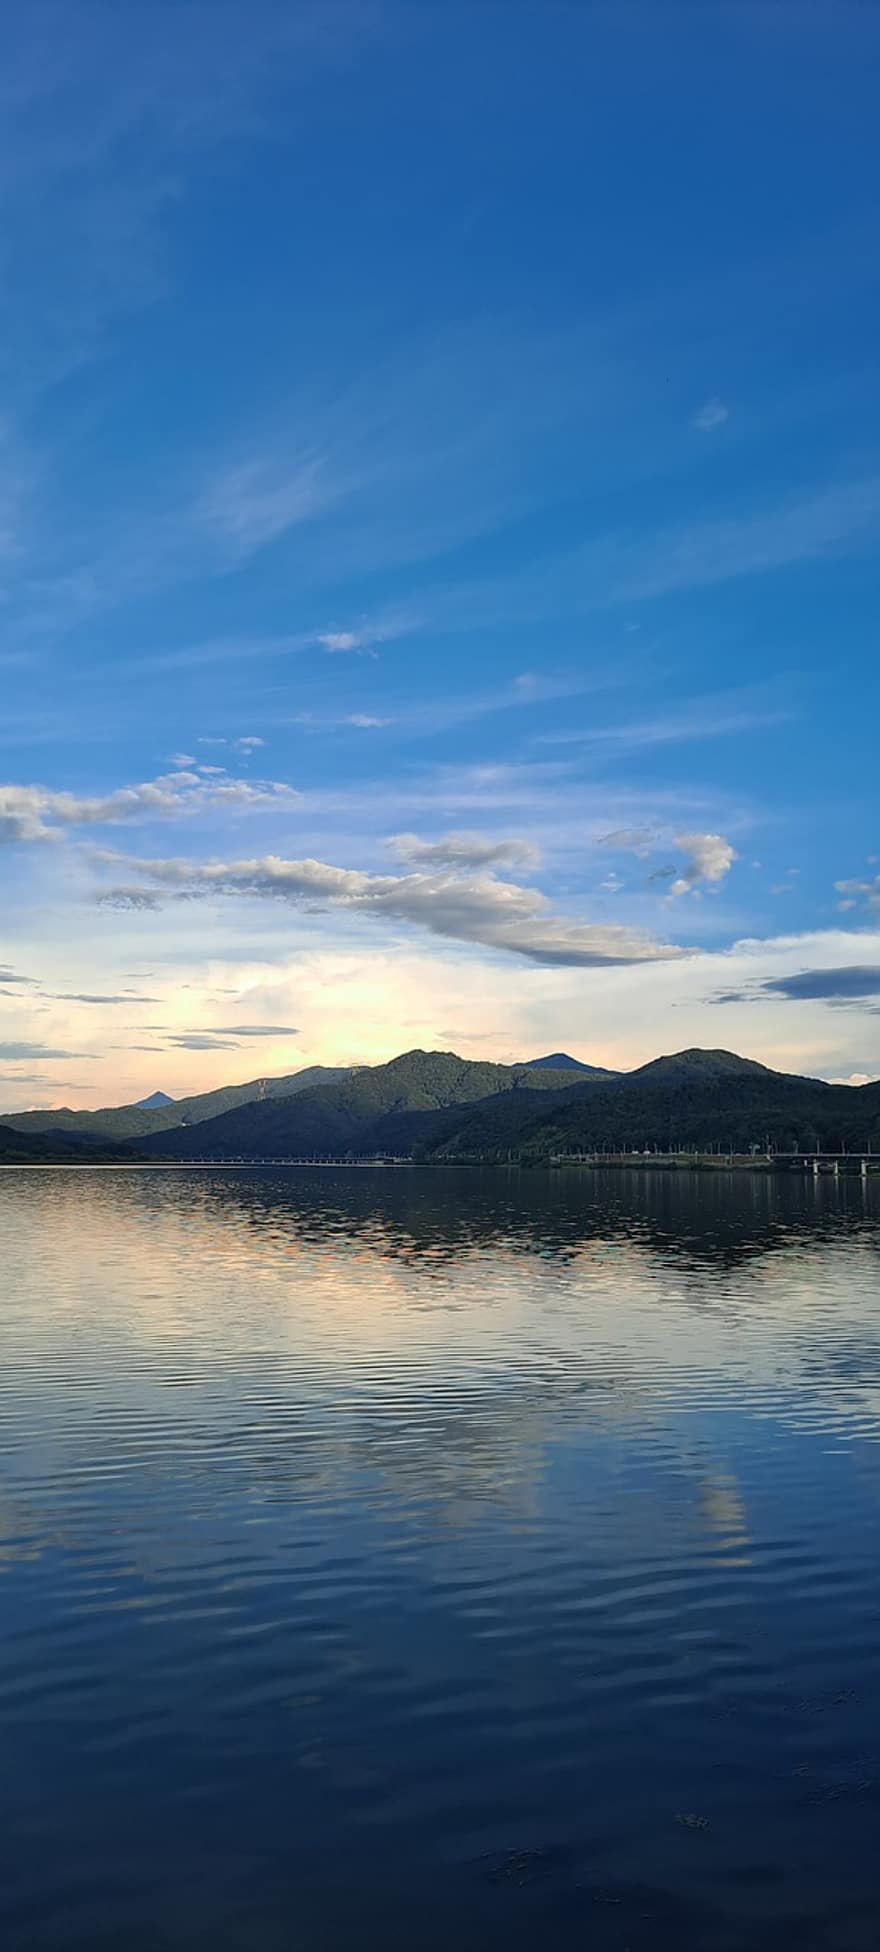 râu, lac, răsărit, fundal, natură, Republica Coreea, albastru, apă, peisaj, vară, reflecţie